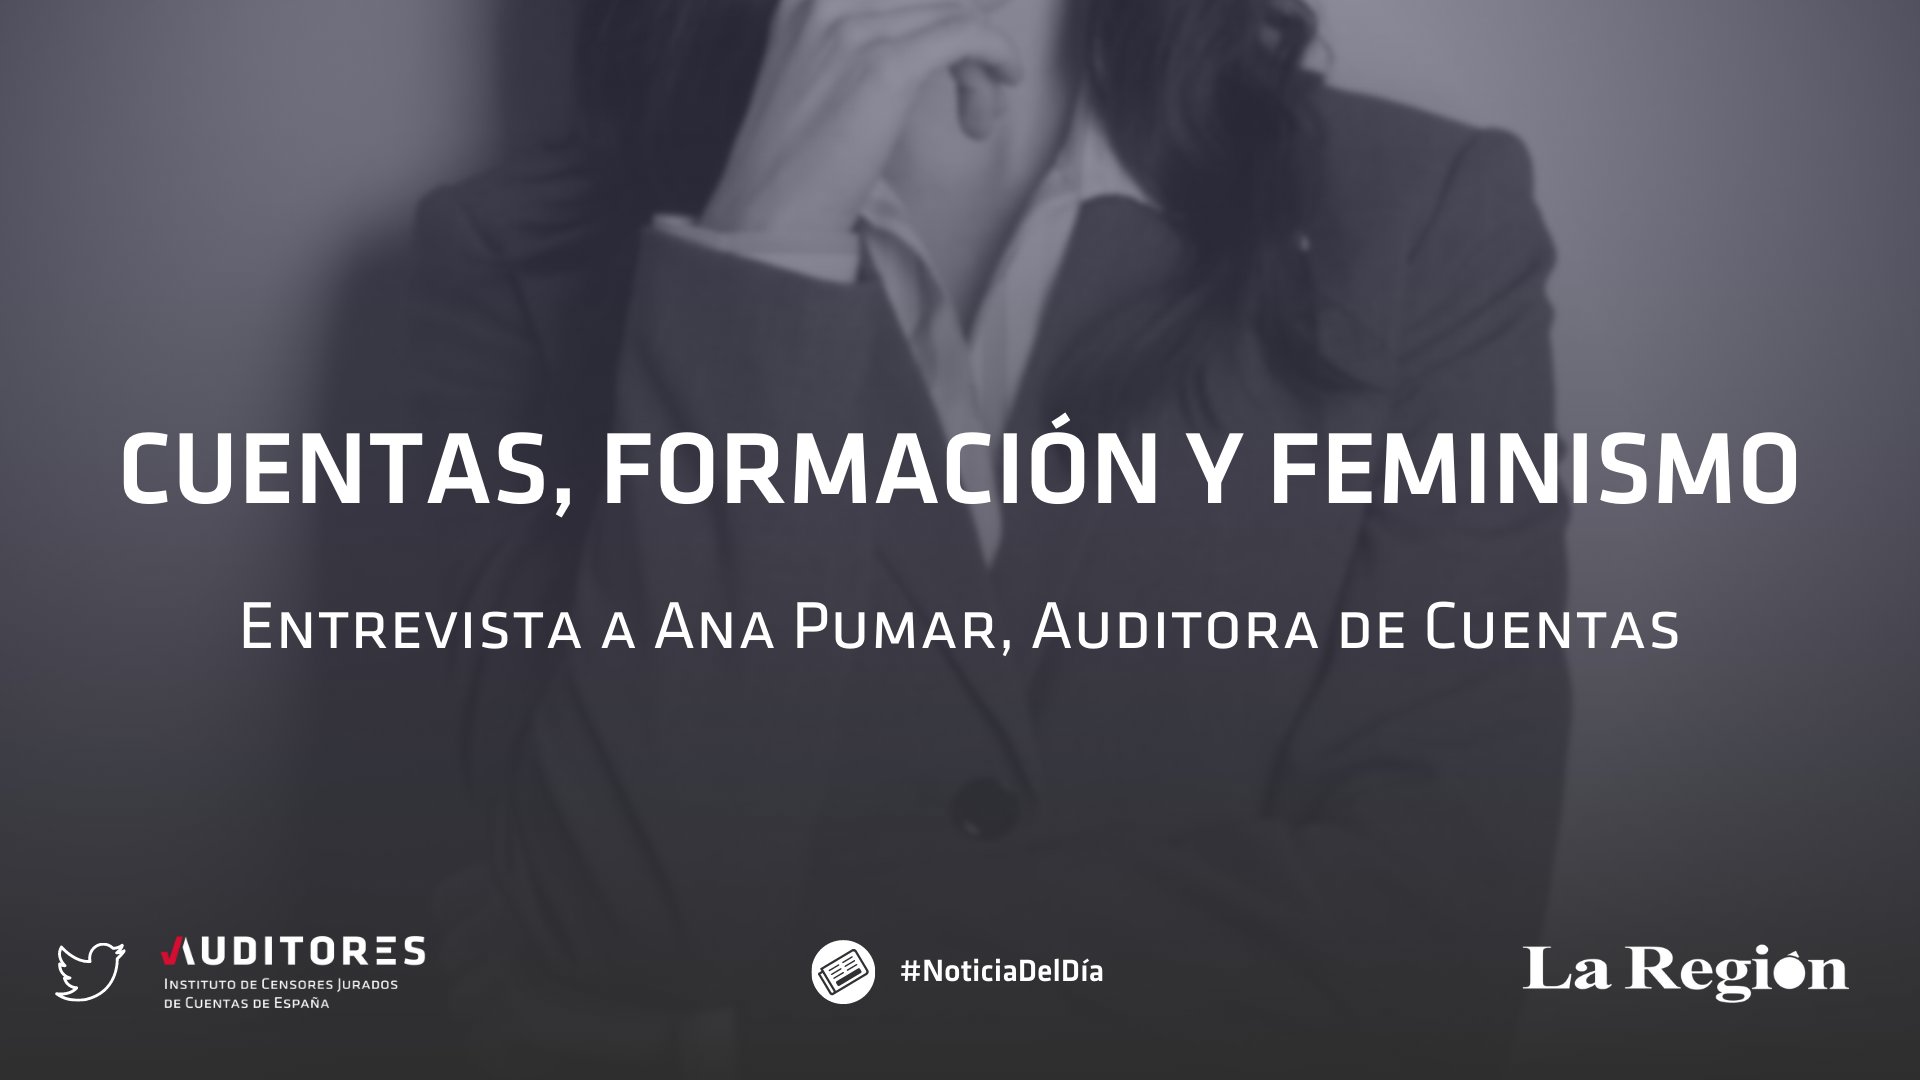 ICJCE Auditores on Twitter: "Ana Pumar cuenta con más 30 años de experiencia como #auditora de cuentas, y forma parte de nuestro grupo de trabajo de equidad a nivel nacional. Podéis